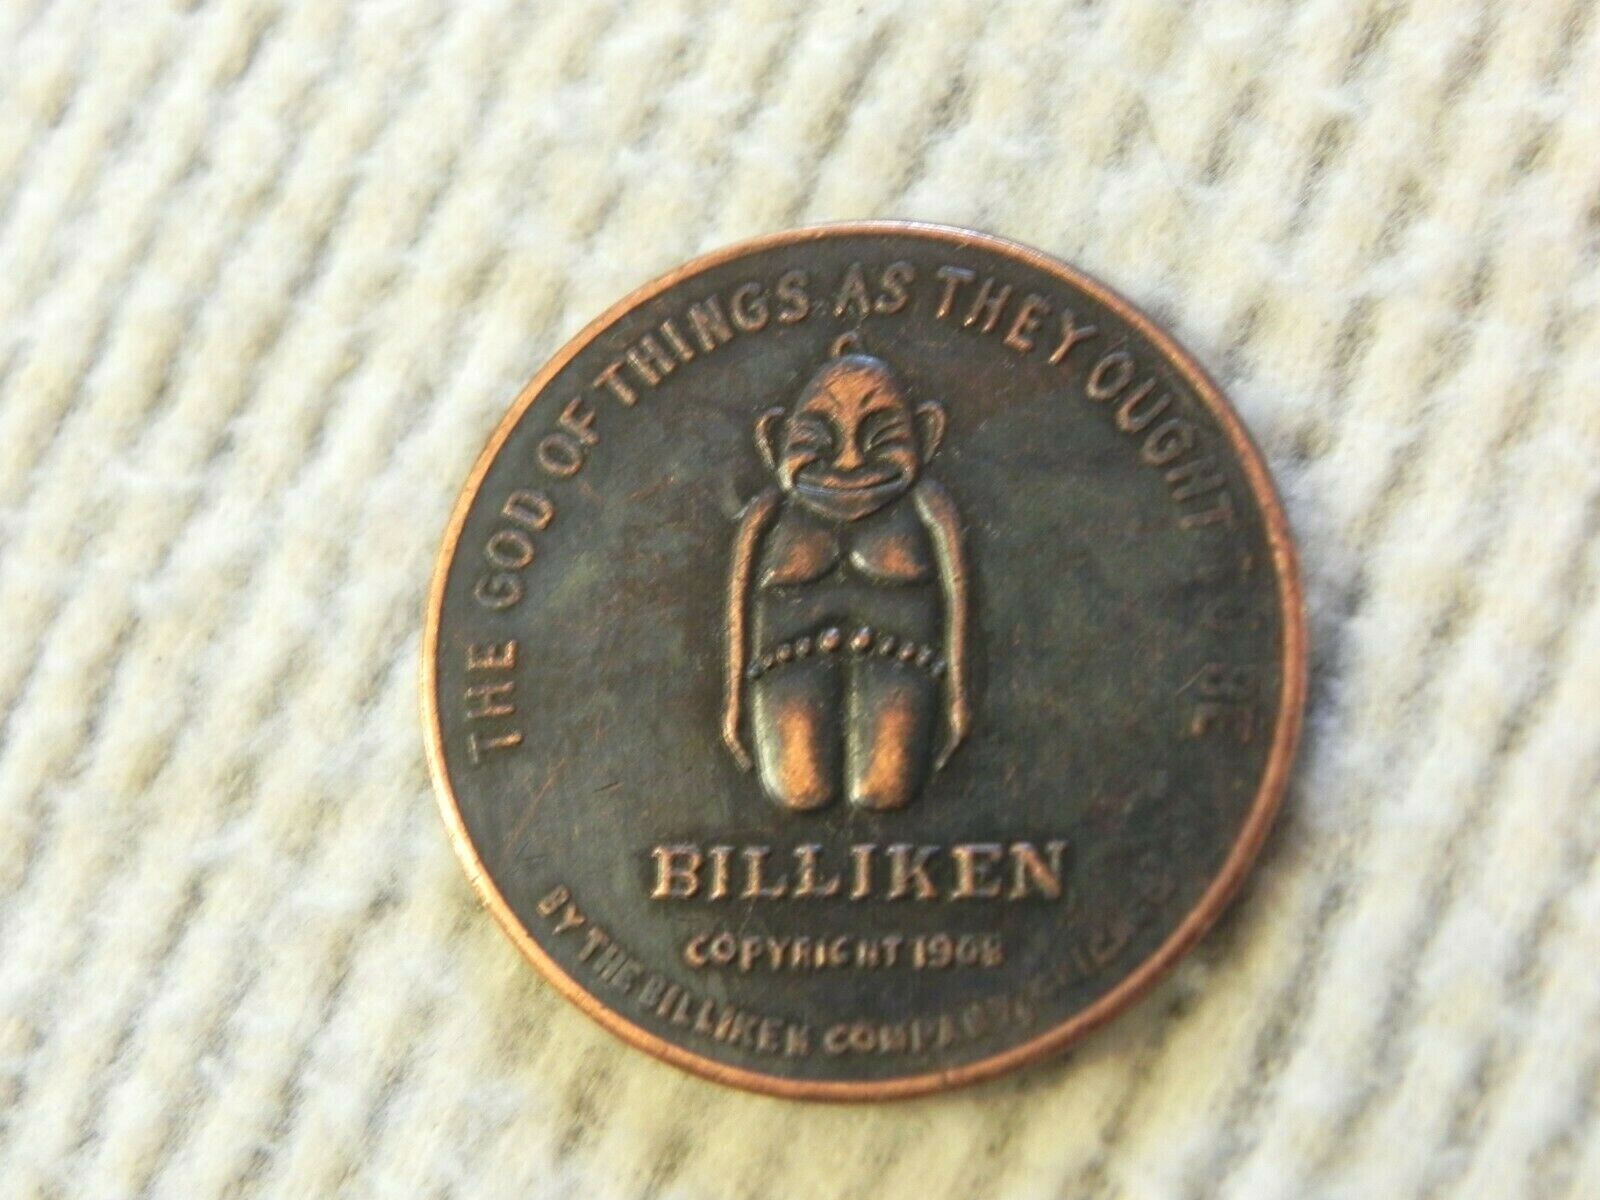 BILLIKEN Lucky Coin Token Pocket Piece Good Luck 1908 Chicago Unknown Vintage  Без бренда - фотография #7